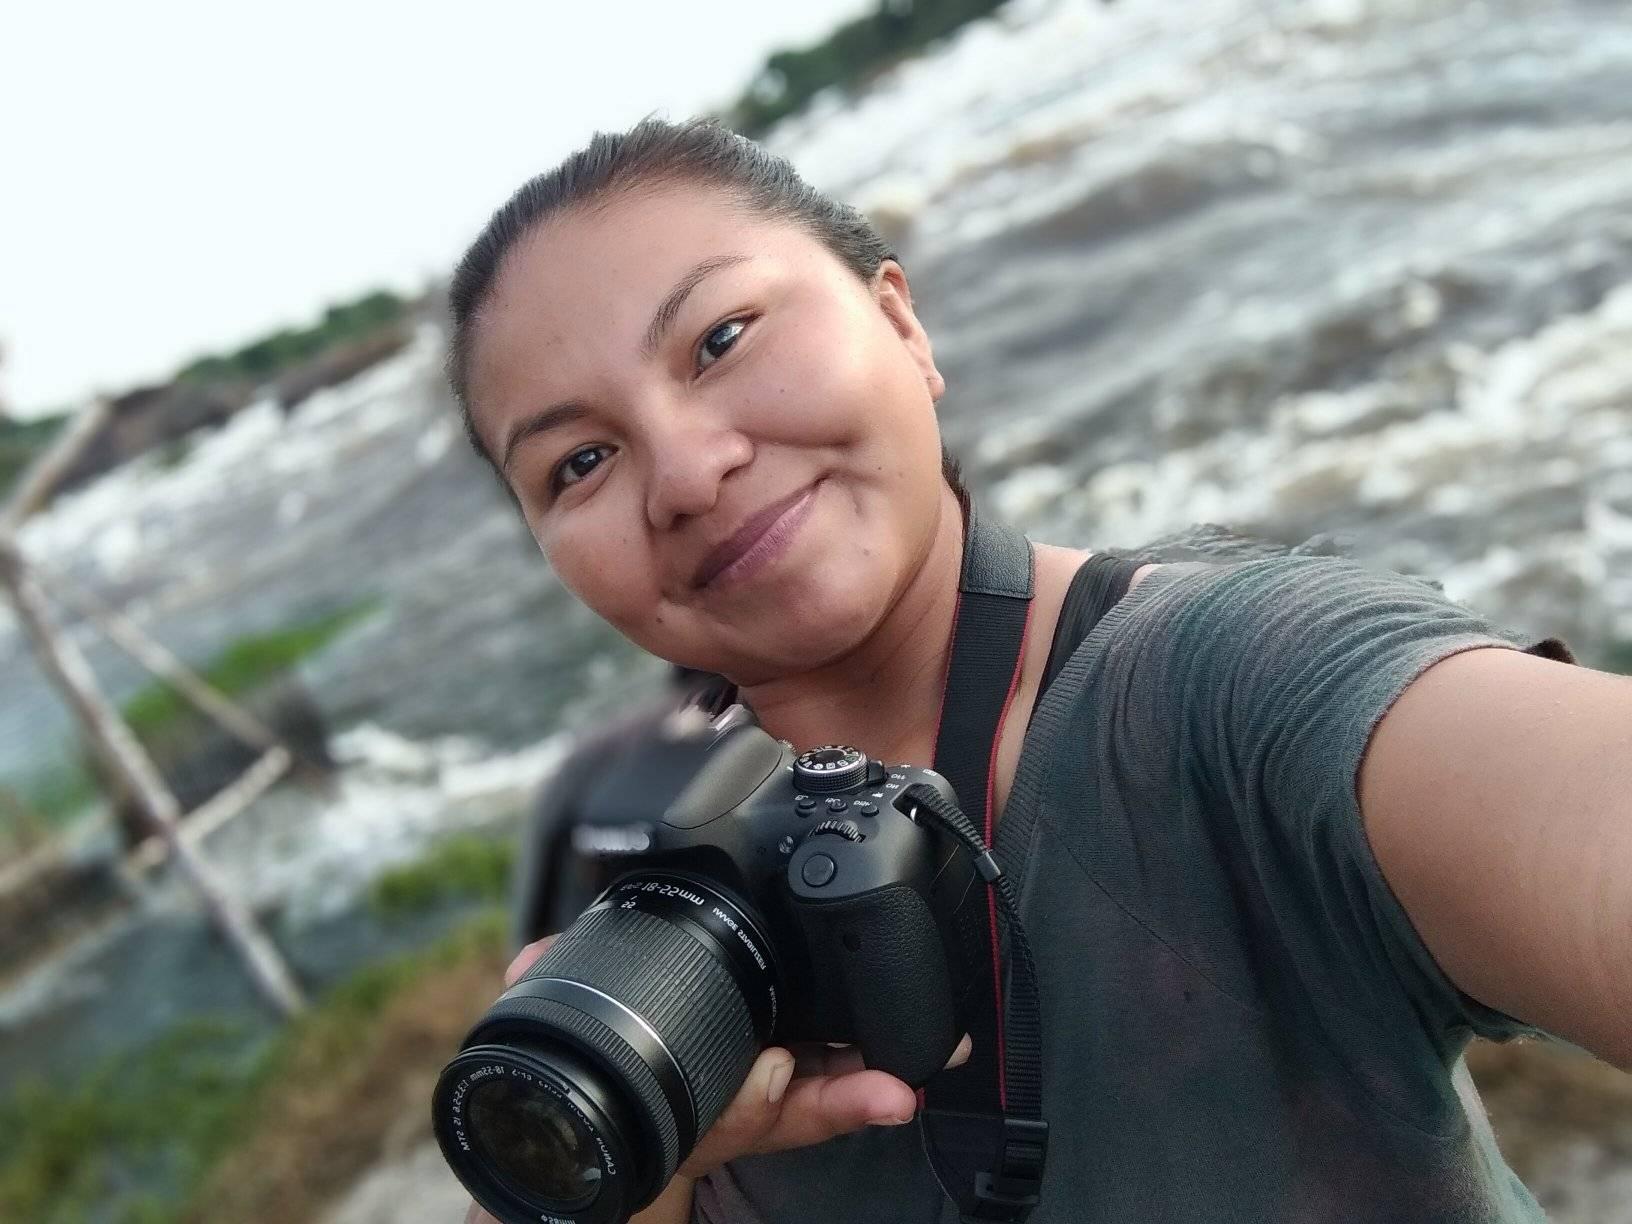  Selfie tirada pela cineasta Larissa Ye`padiho Duarte Tukano, mulher indígena do povo Tukano. Ela olha diretamente para câmera e sorri sem mostrar os dentes enquanto segura uma câmera fotográfica. Ela veste uma camiseta na cor cinza e está numa paisagem com o Rio Negro desfocado.